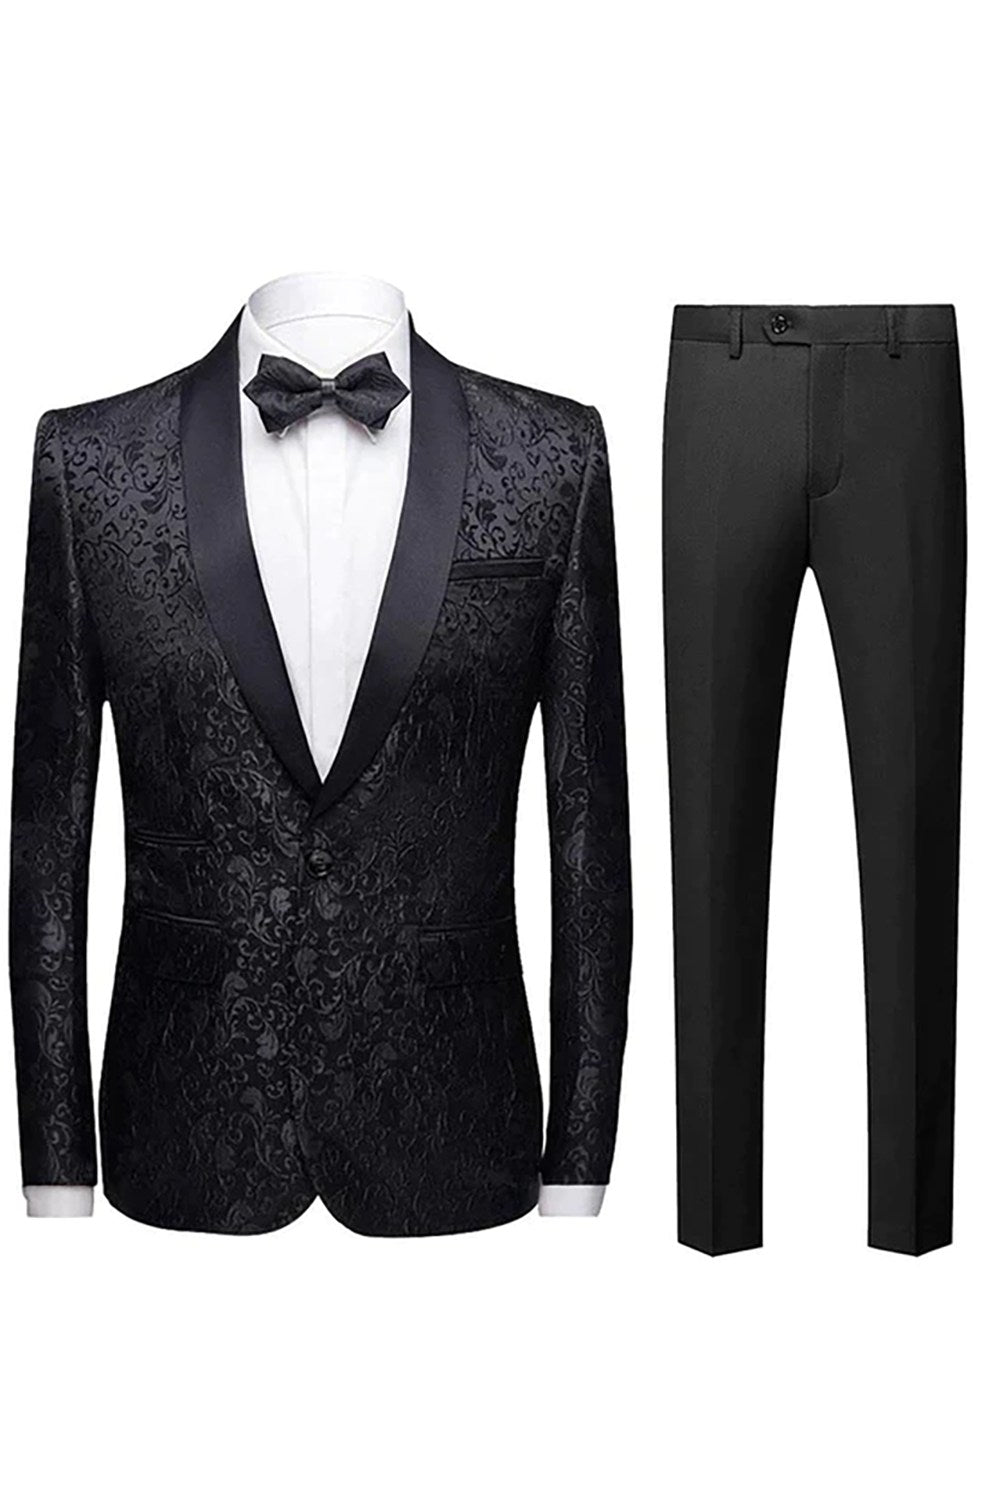 Men's 2-Piece Suits Jacquard Tuxedo Black